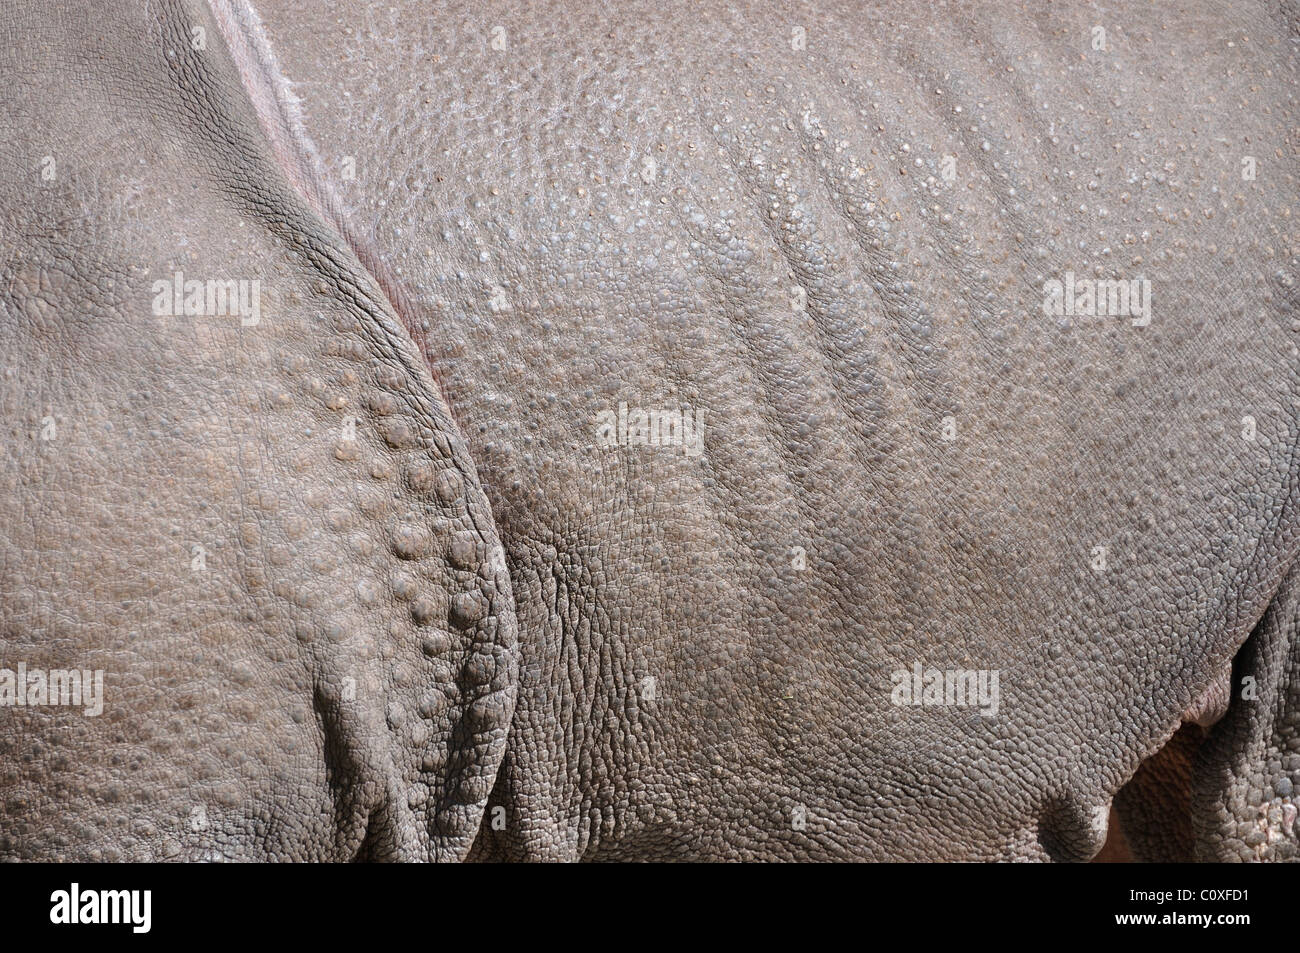 La peau de rhinocéros indien Banque D'Images